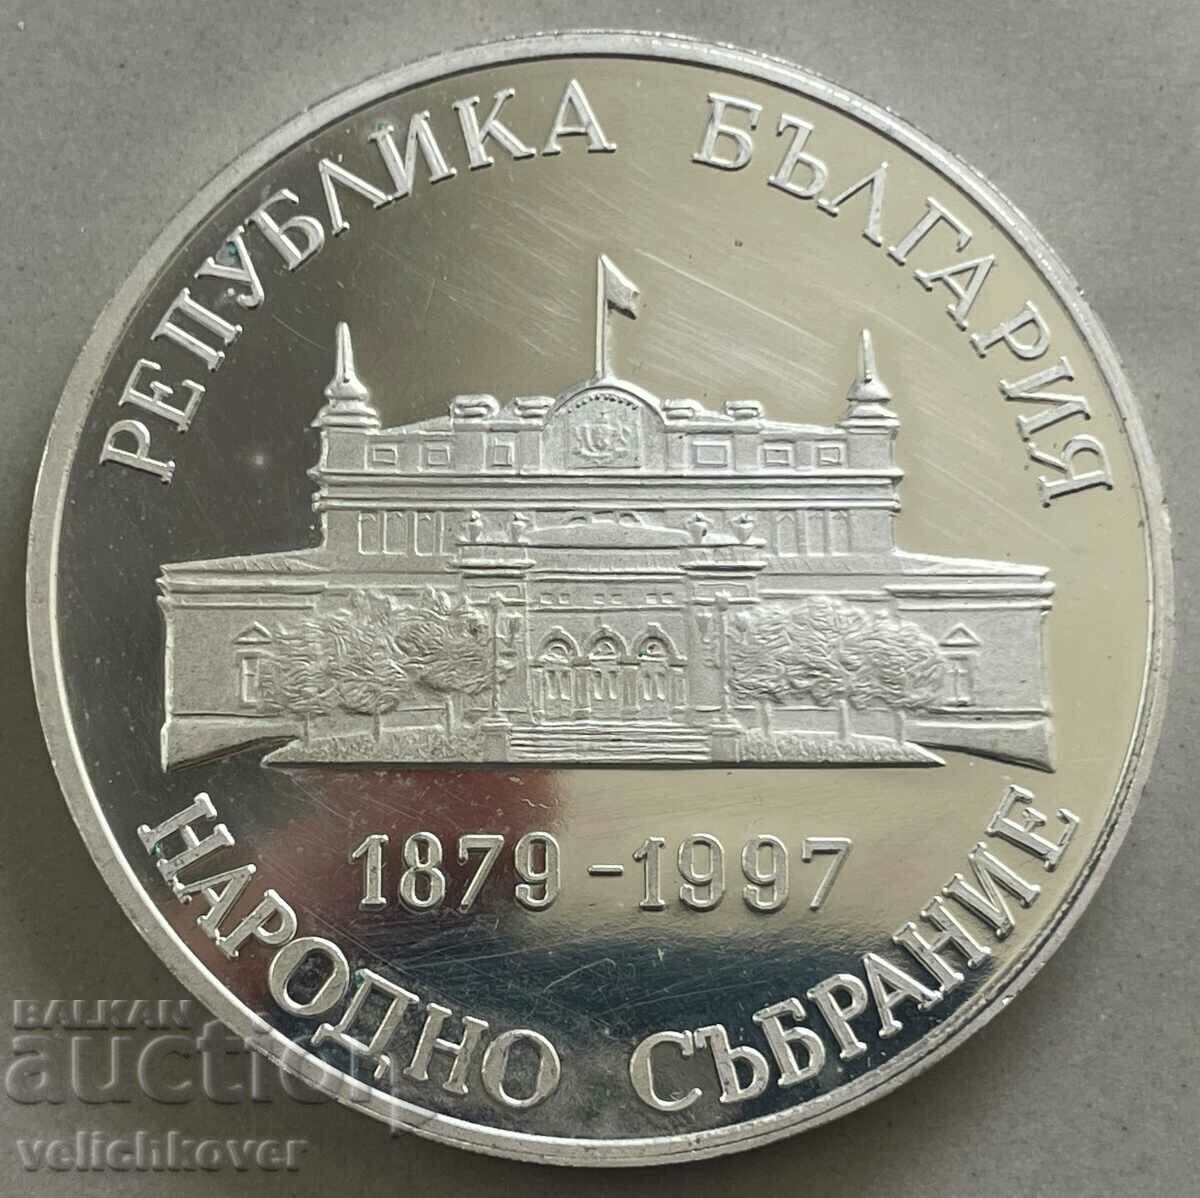 34600 България плакет 120. Народно събрание Парламент 1997г.